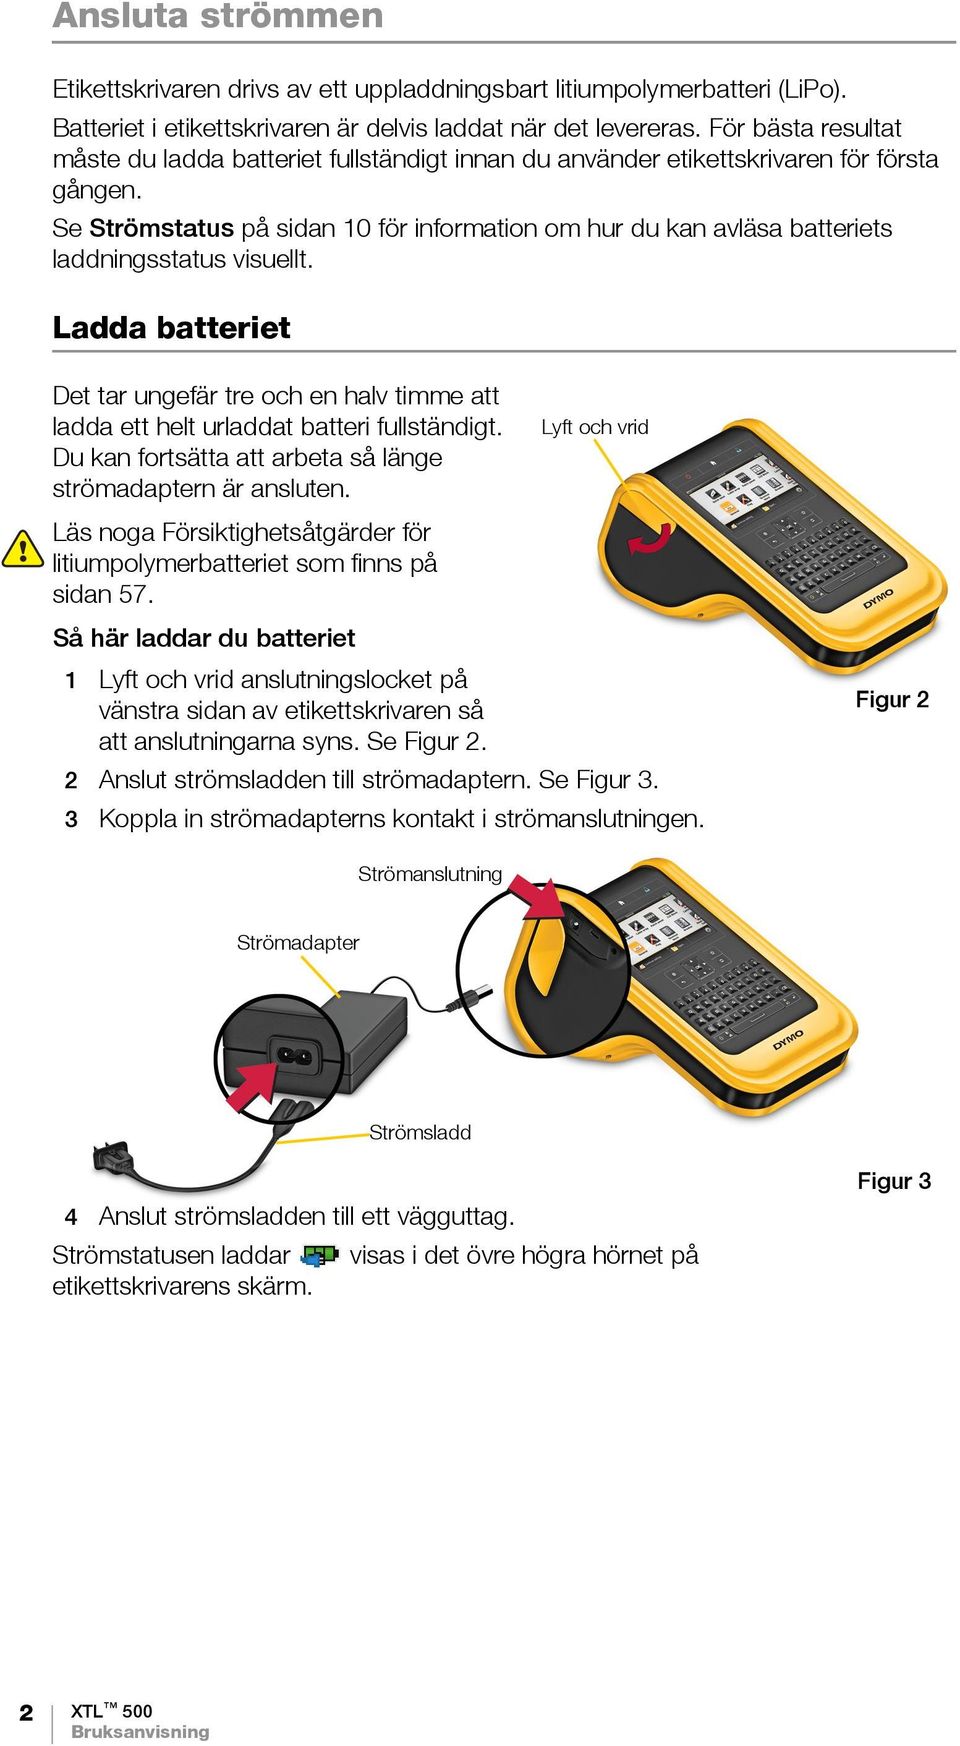 Se Strömstatus på sidan 10 för information om hur du kan avläsa batteriets laddningsstatus visuellt.